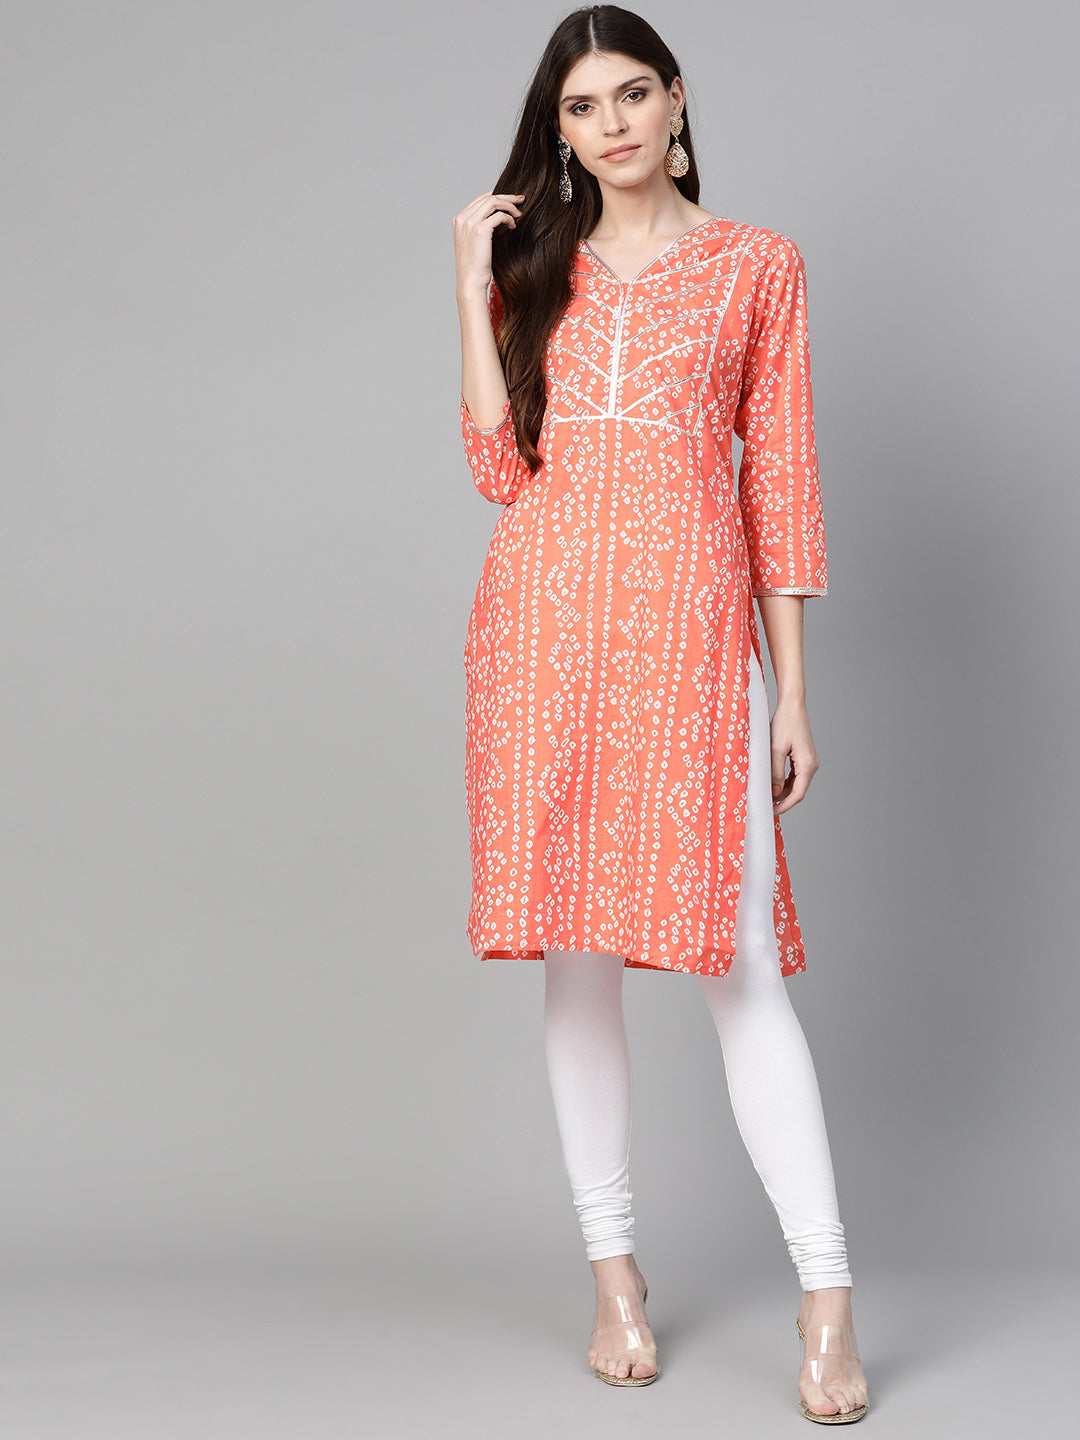 Women's Orange & White Printed Straight Kurta - Bhama Couture